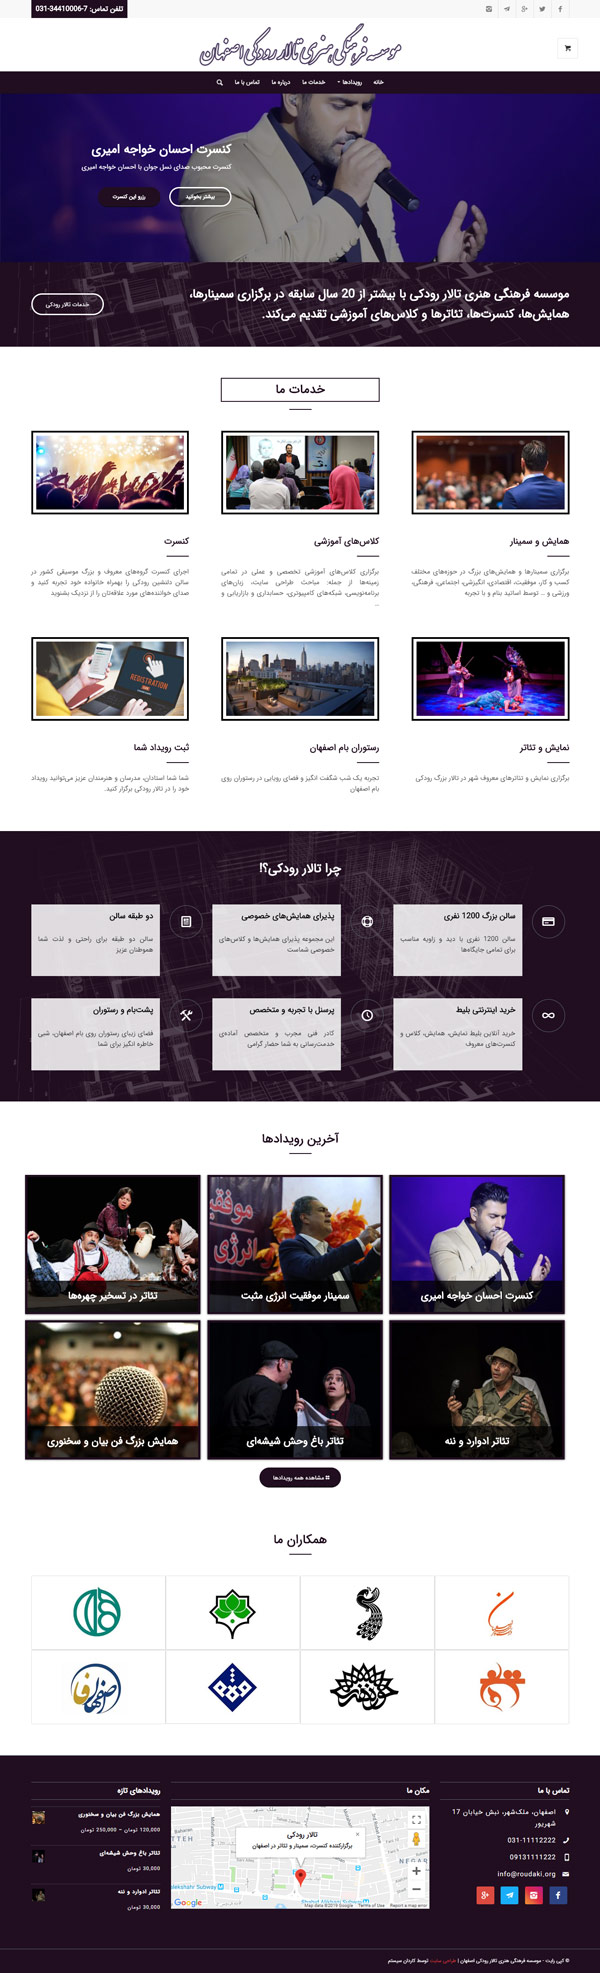 طراحی سایت تالار رودکی | برگزارکننده سمینار و کنسرت